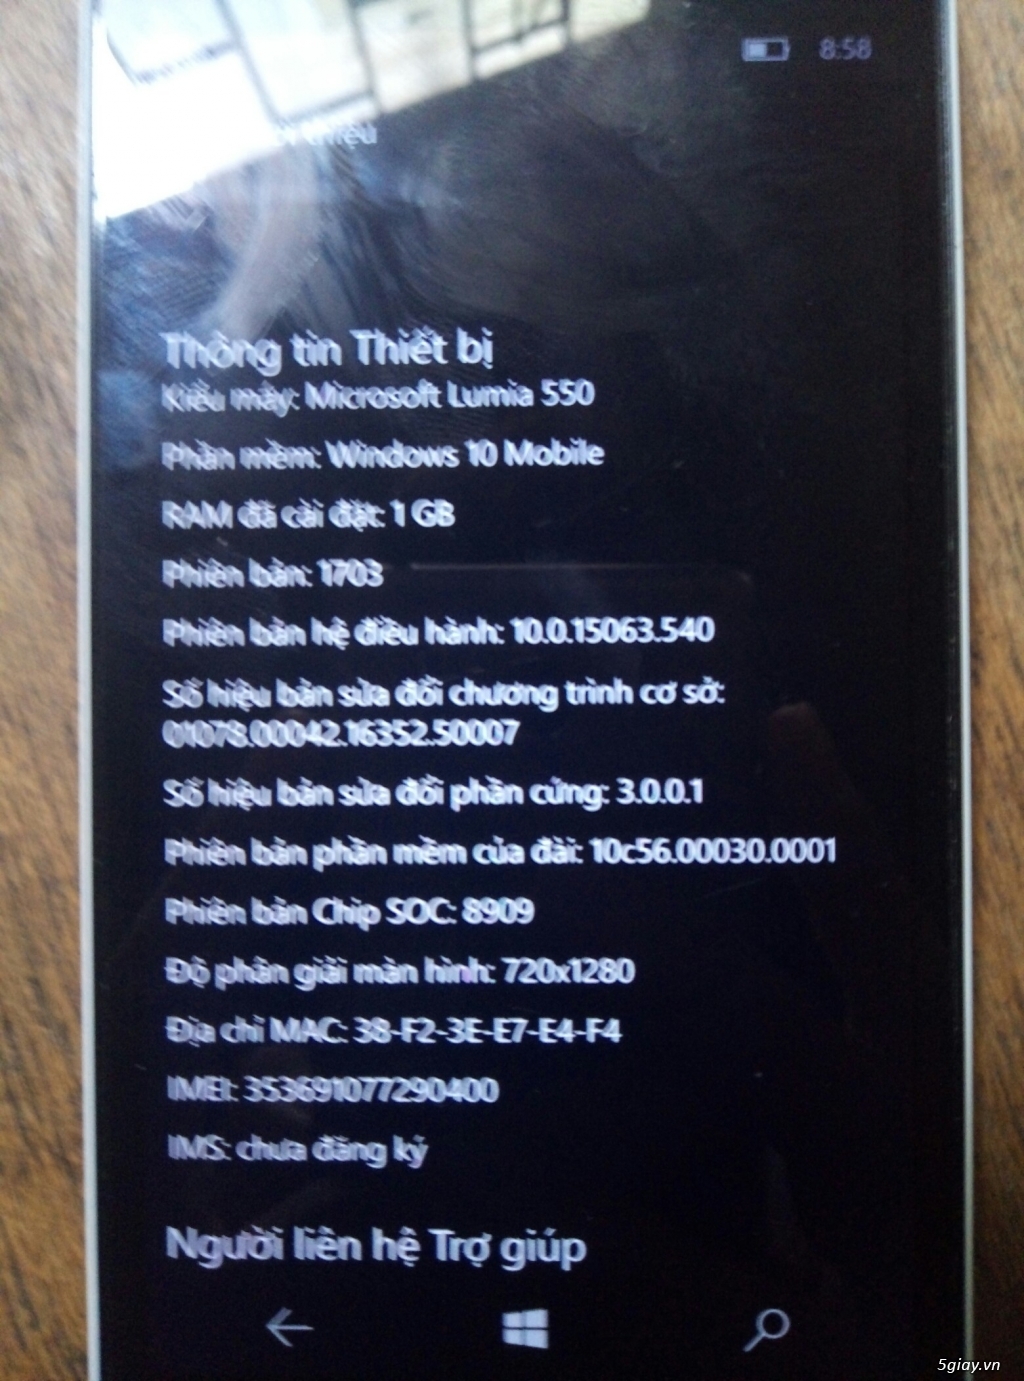 Microsoft Lumia 550 chính hãng TGDD - 4